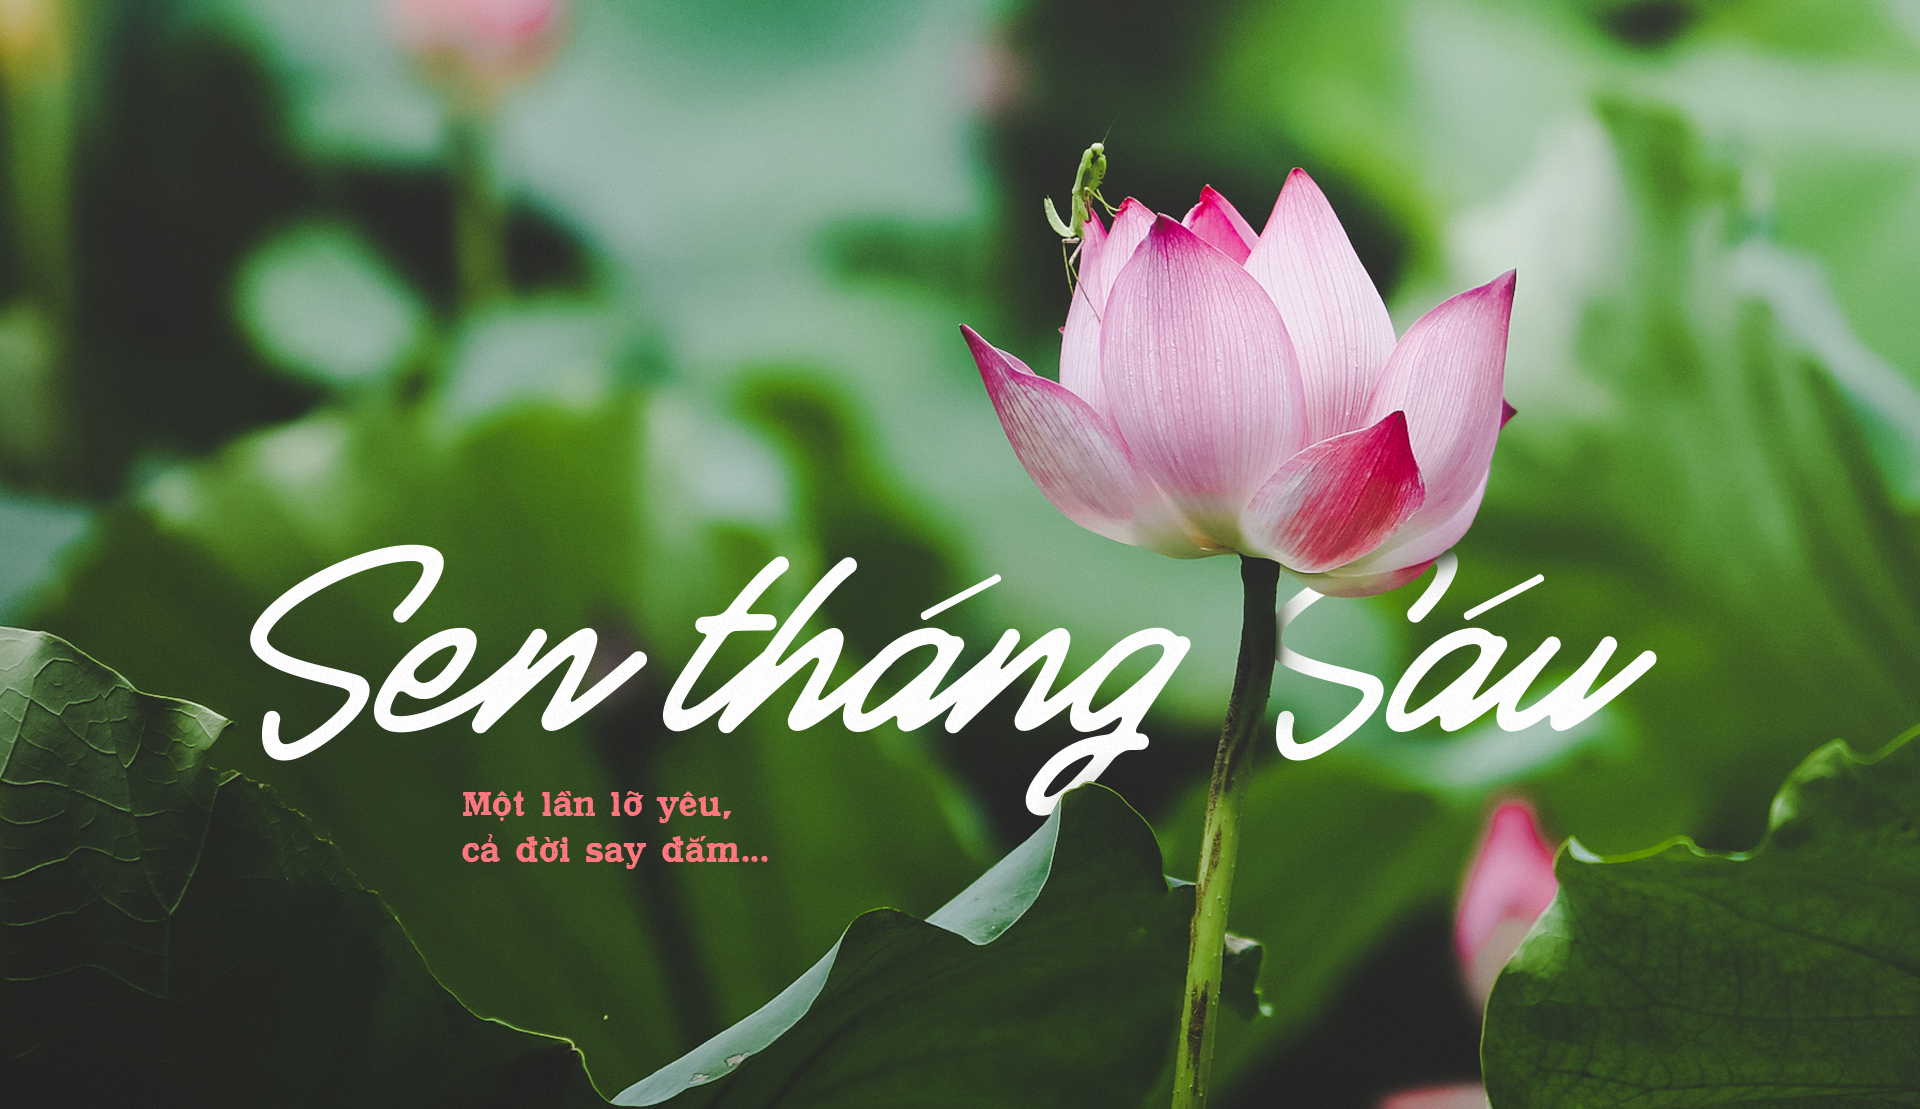 Sen tháng Sáu, một trong những hình ảnh đẹp nhất của mùa hè. Chúng tôi có nhiều bức ảnh sen rực rỡ và lãng mạn cho bạn thưởng thức, kèm theo những lời giới thiệu tình cảm về người phụ nữ Việt Nam trong thơ ca. Hãy để sen tháng Sáu gợi lại trong bạn những cảm xúc đẹp và tinh khôi.